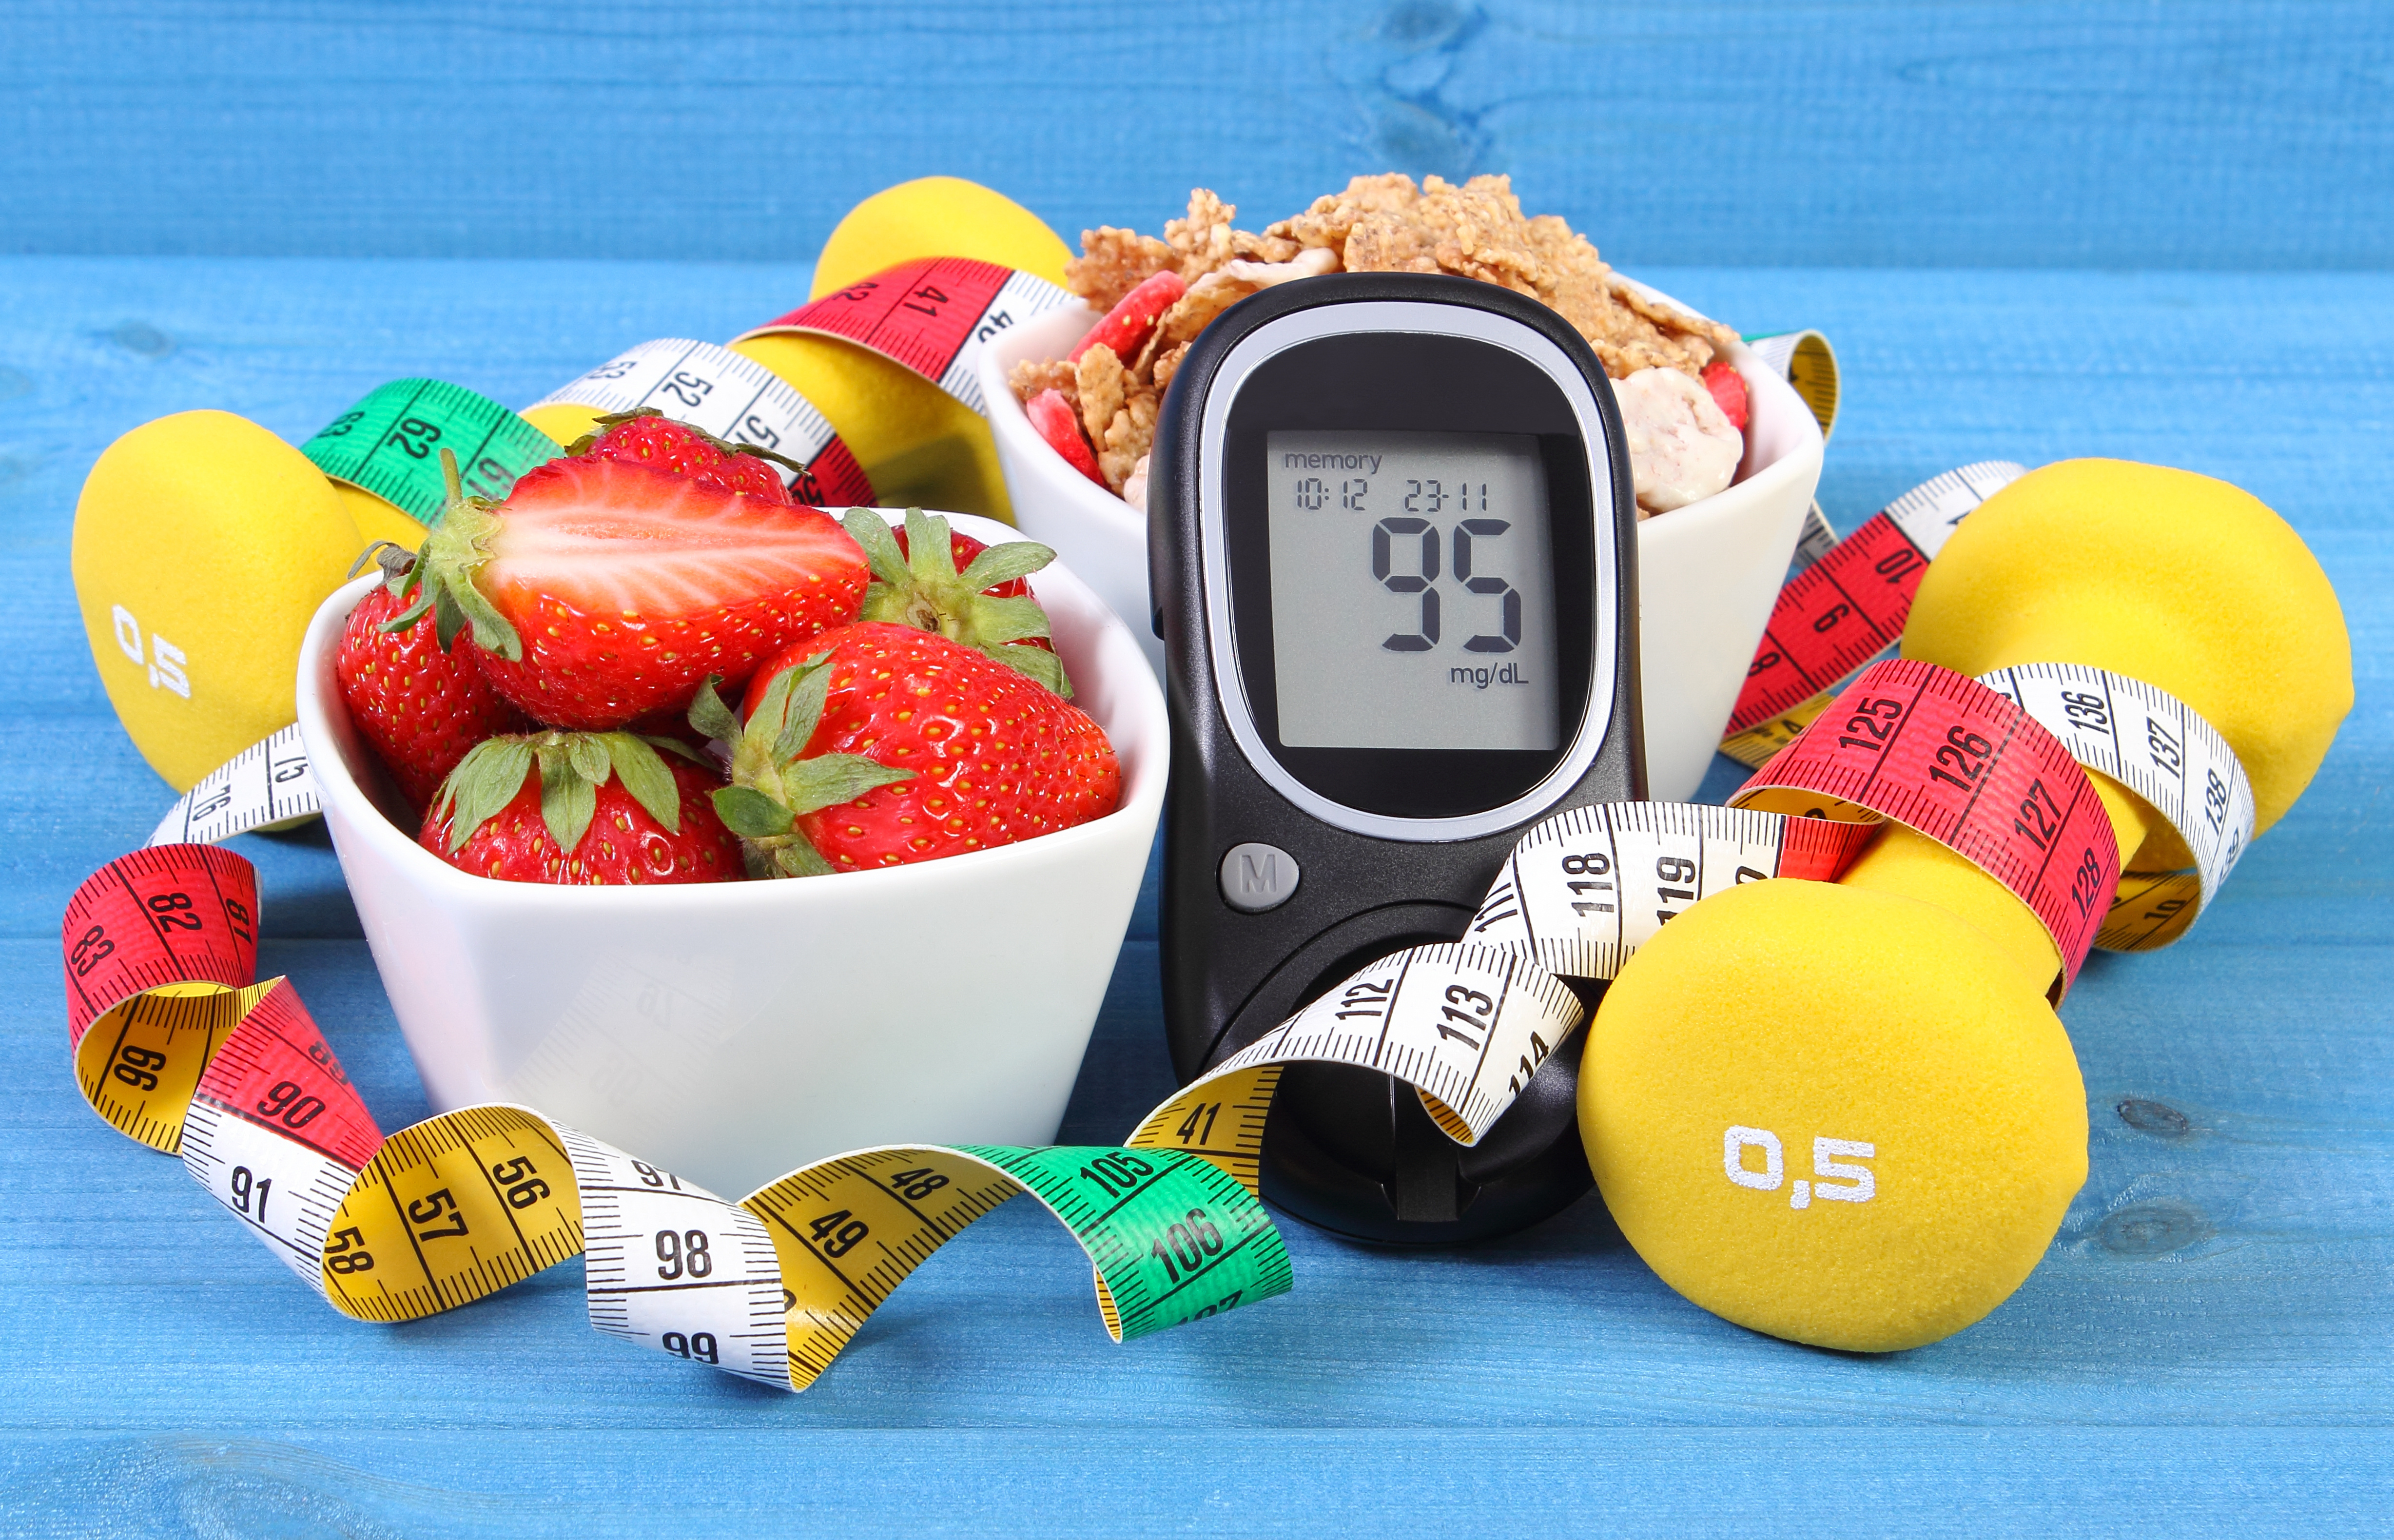 Je dôležité mať glykémiu pod kontrolou. Zdravá strava a pohyb sú základom života s cukrovkou. FOTO: Adobe Stock